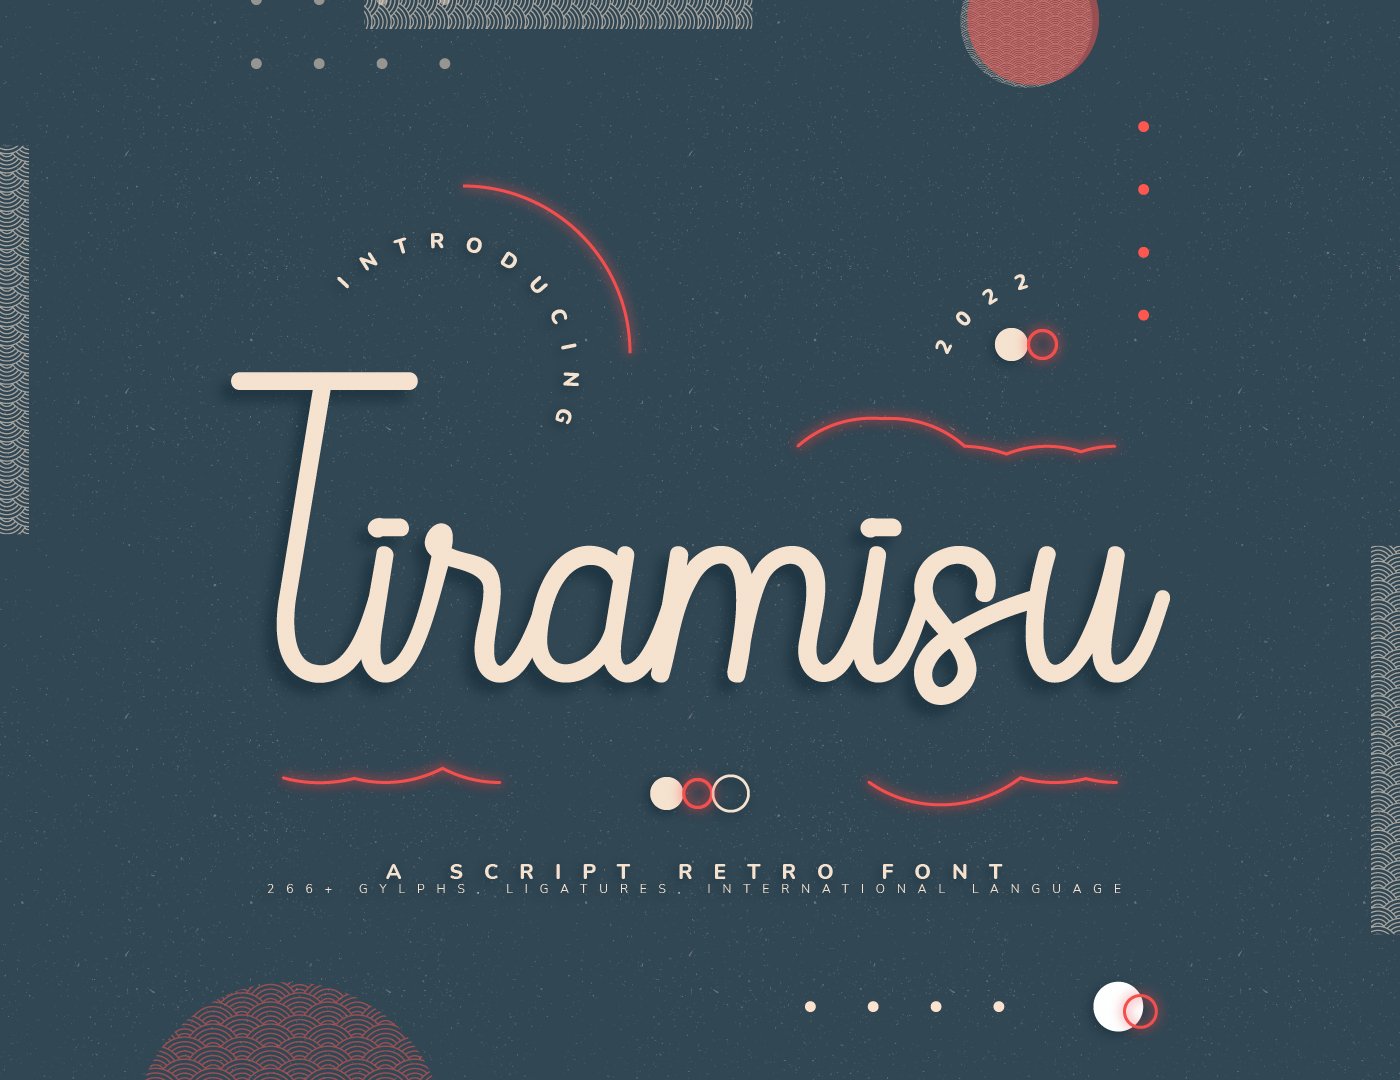 Tiramisu Retro Script Font cover image.